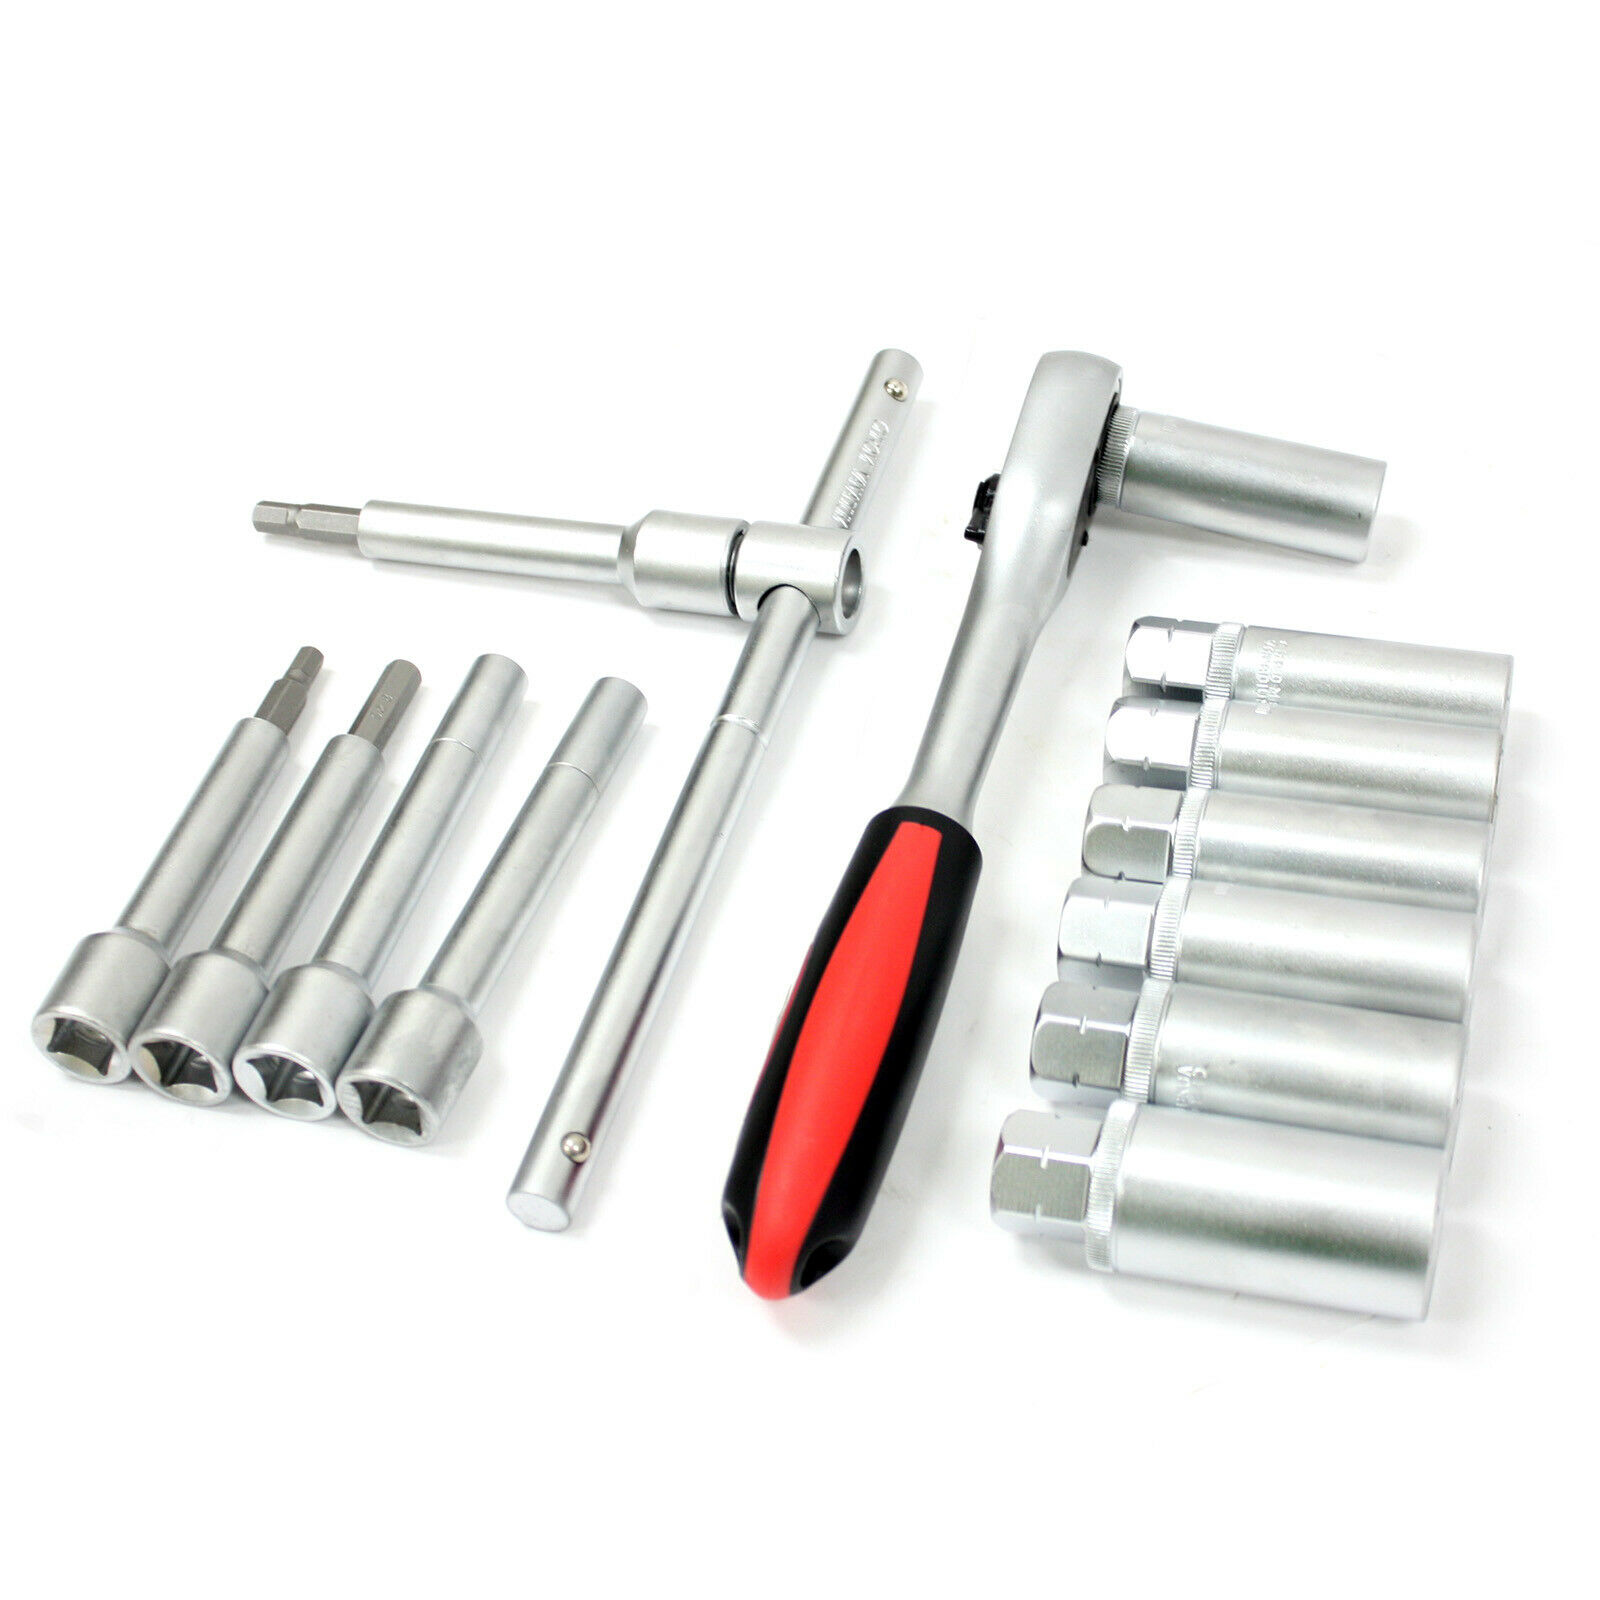 special socket wrench nuts shock absorbers Repair tool Vw Audi Nisan 5.2 mm Key